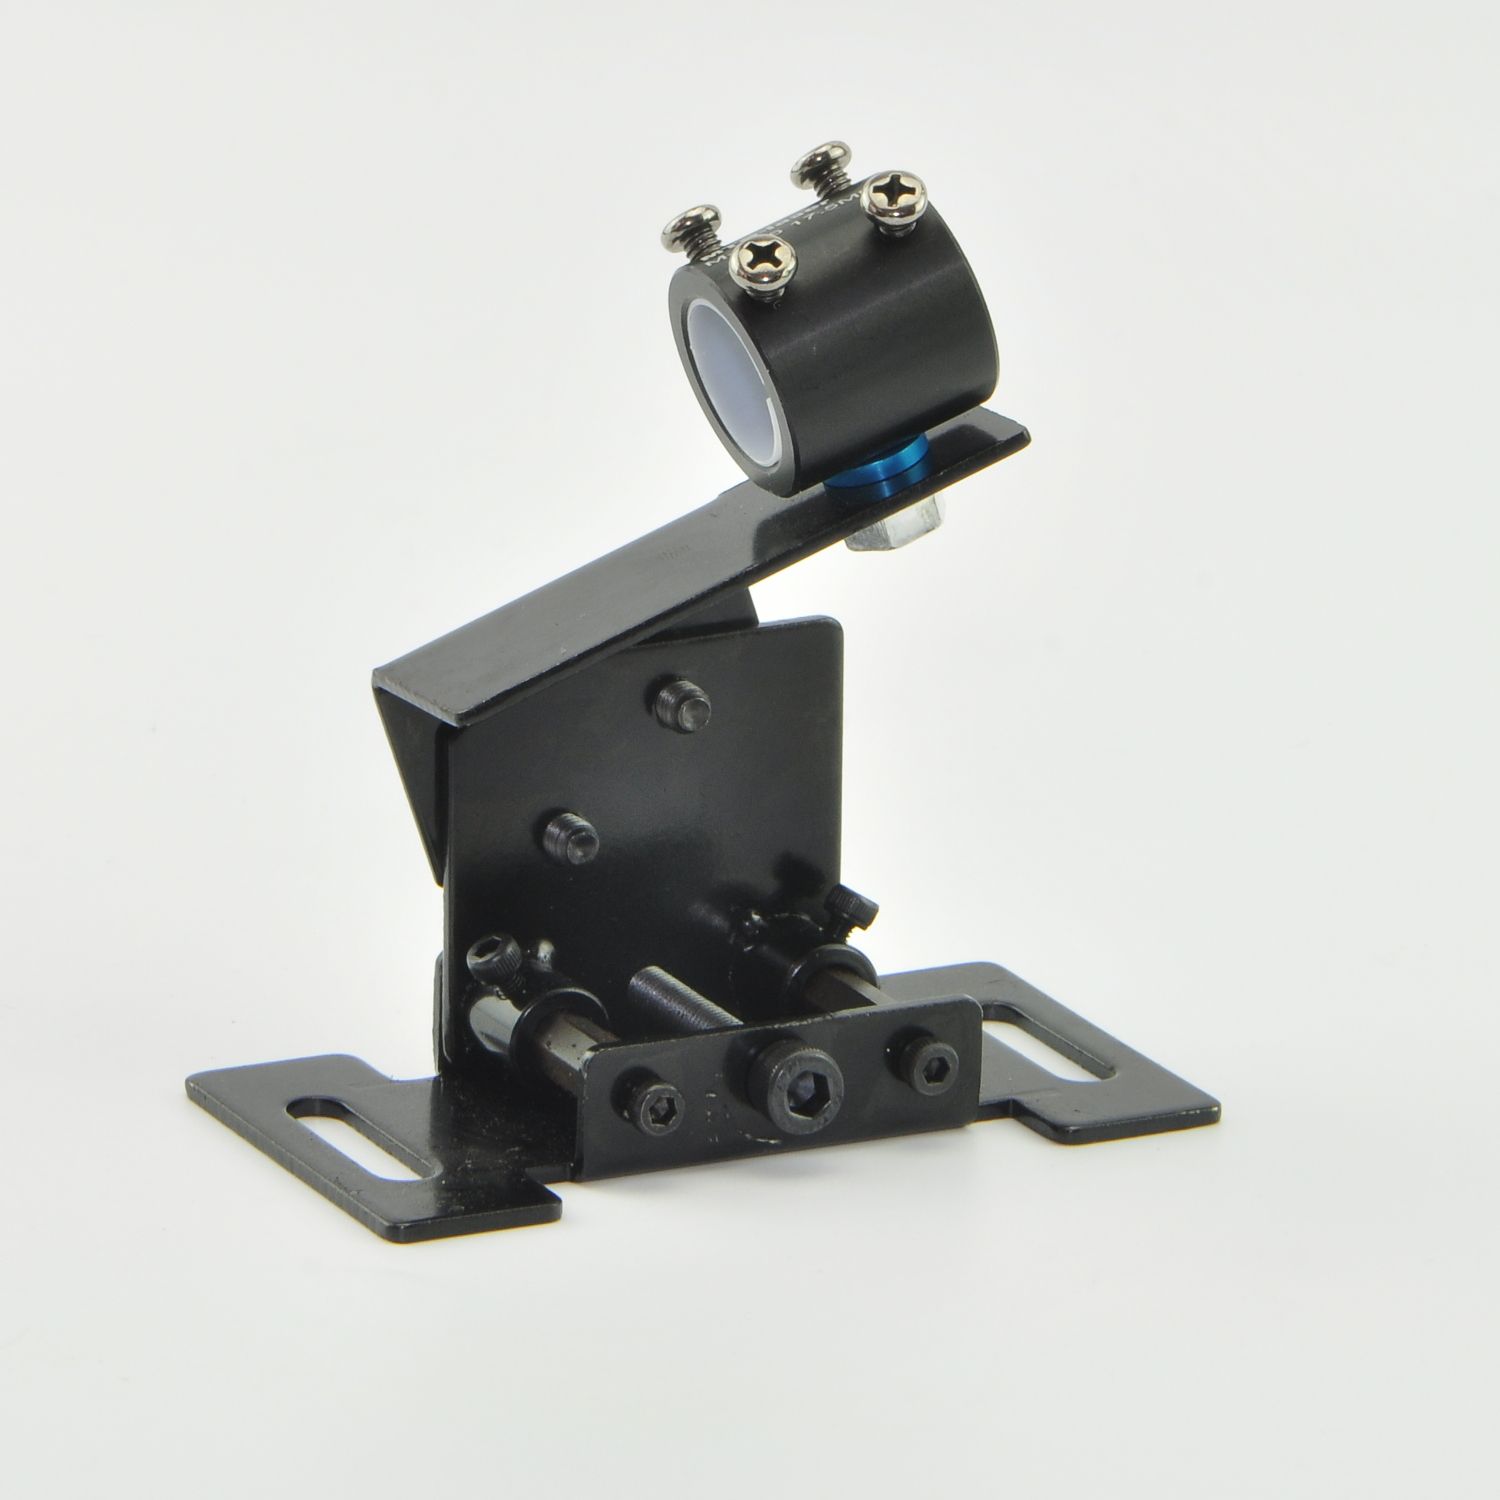 MTO-HT-Horizontal-Positioning-Shockproof-Bracket-Holder-Mount-for-135mm-235mm-Laser-Module-Pointer-1292429